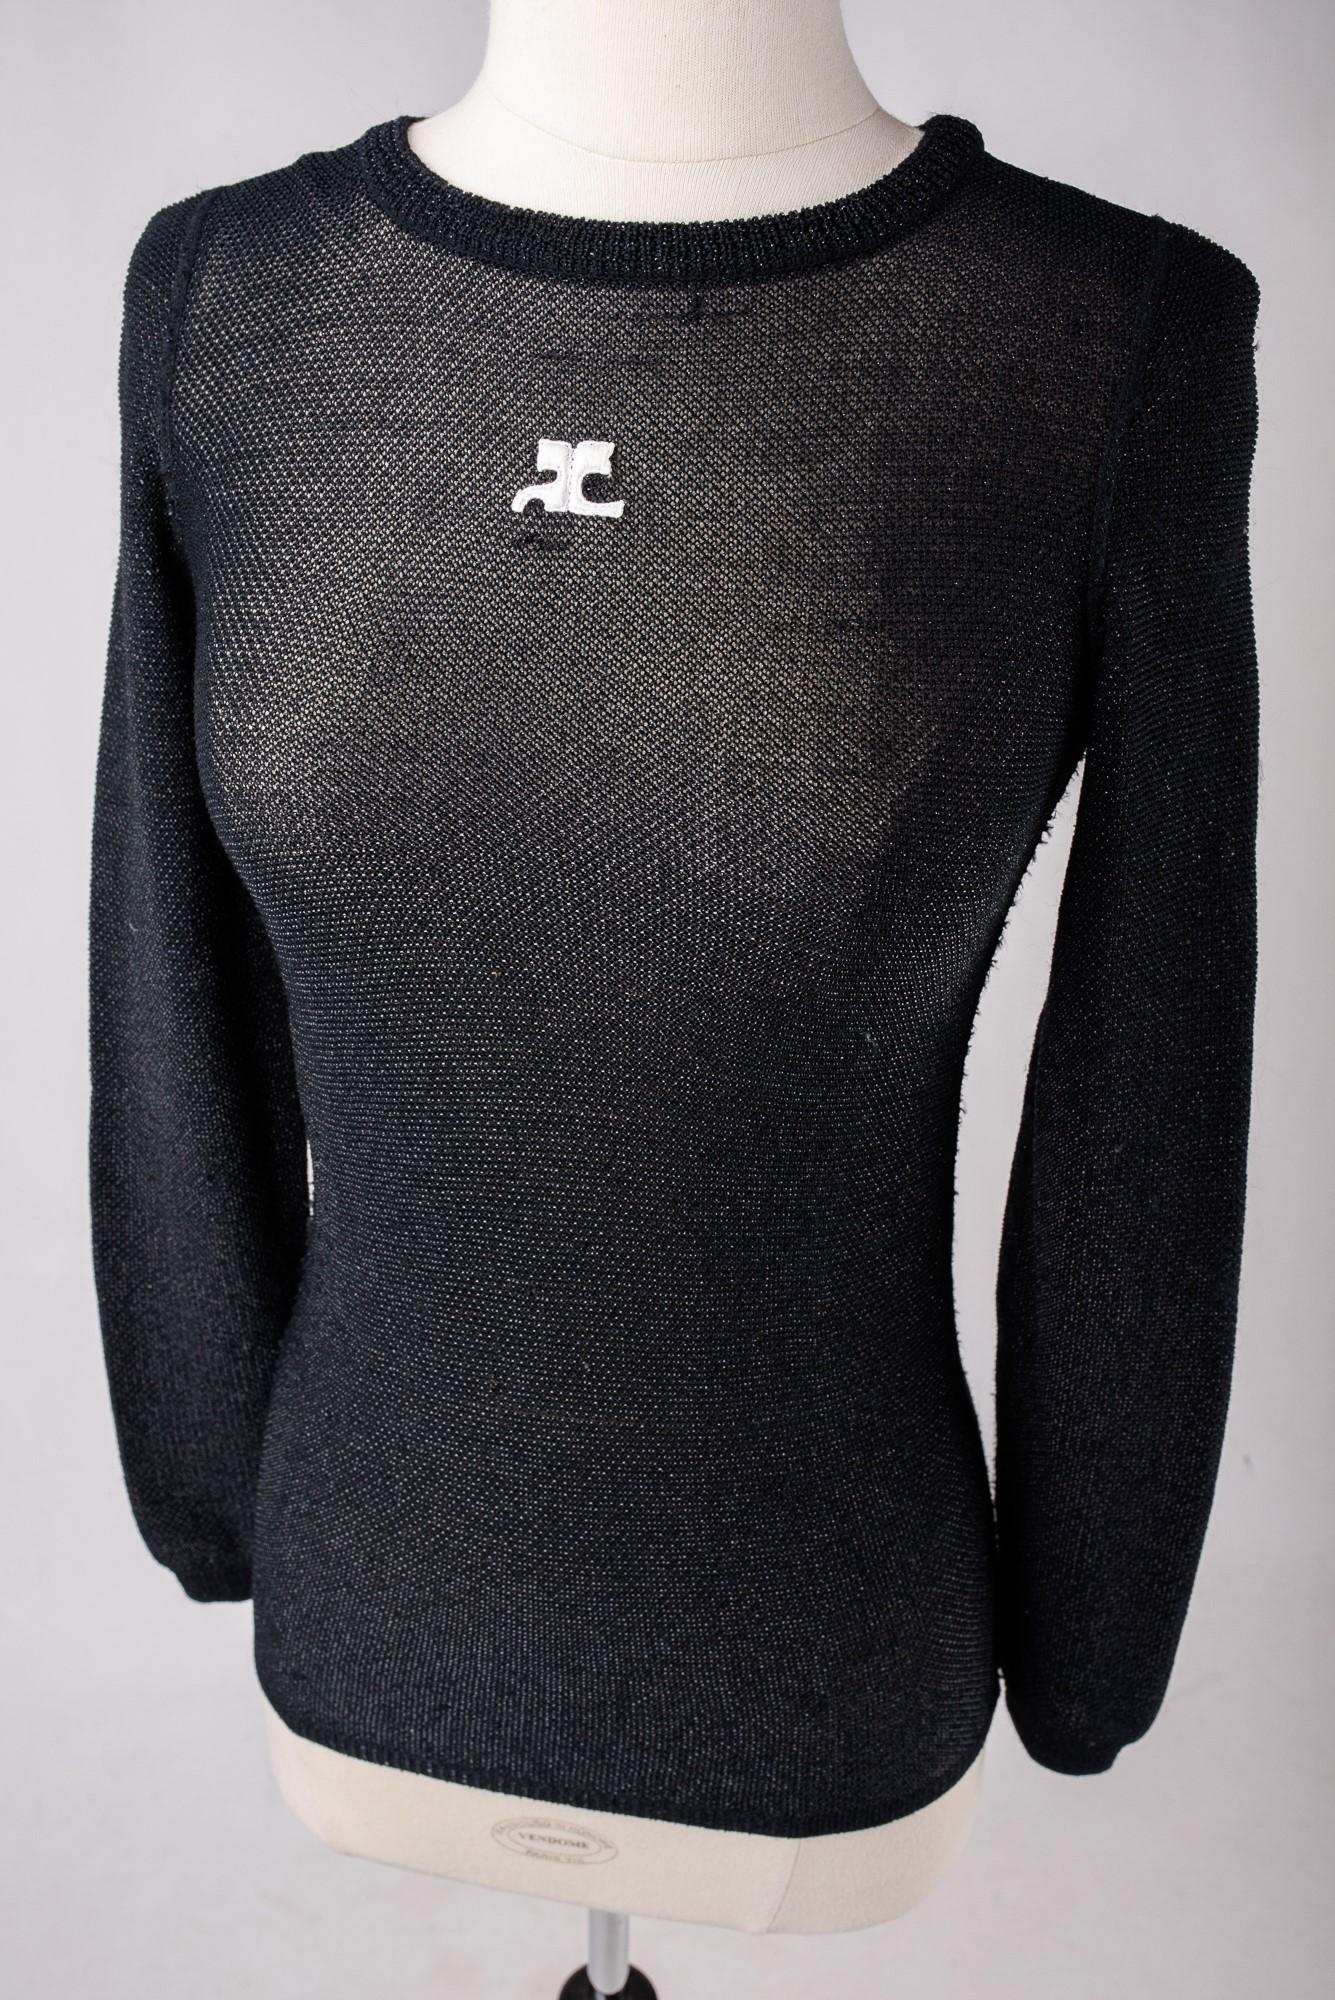 Circa 1970-1980
France

Magnifique pull stretch noir en maille de laine polyamide et lamé lurex argenté de la Maison Courrèges, datant de la fin des années 1970. Il présente une coupe ajustée, un col ras du cou, des manches longues et le logo de la